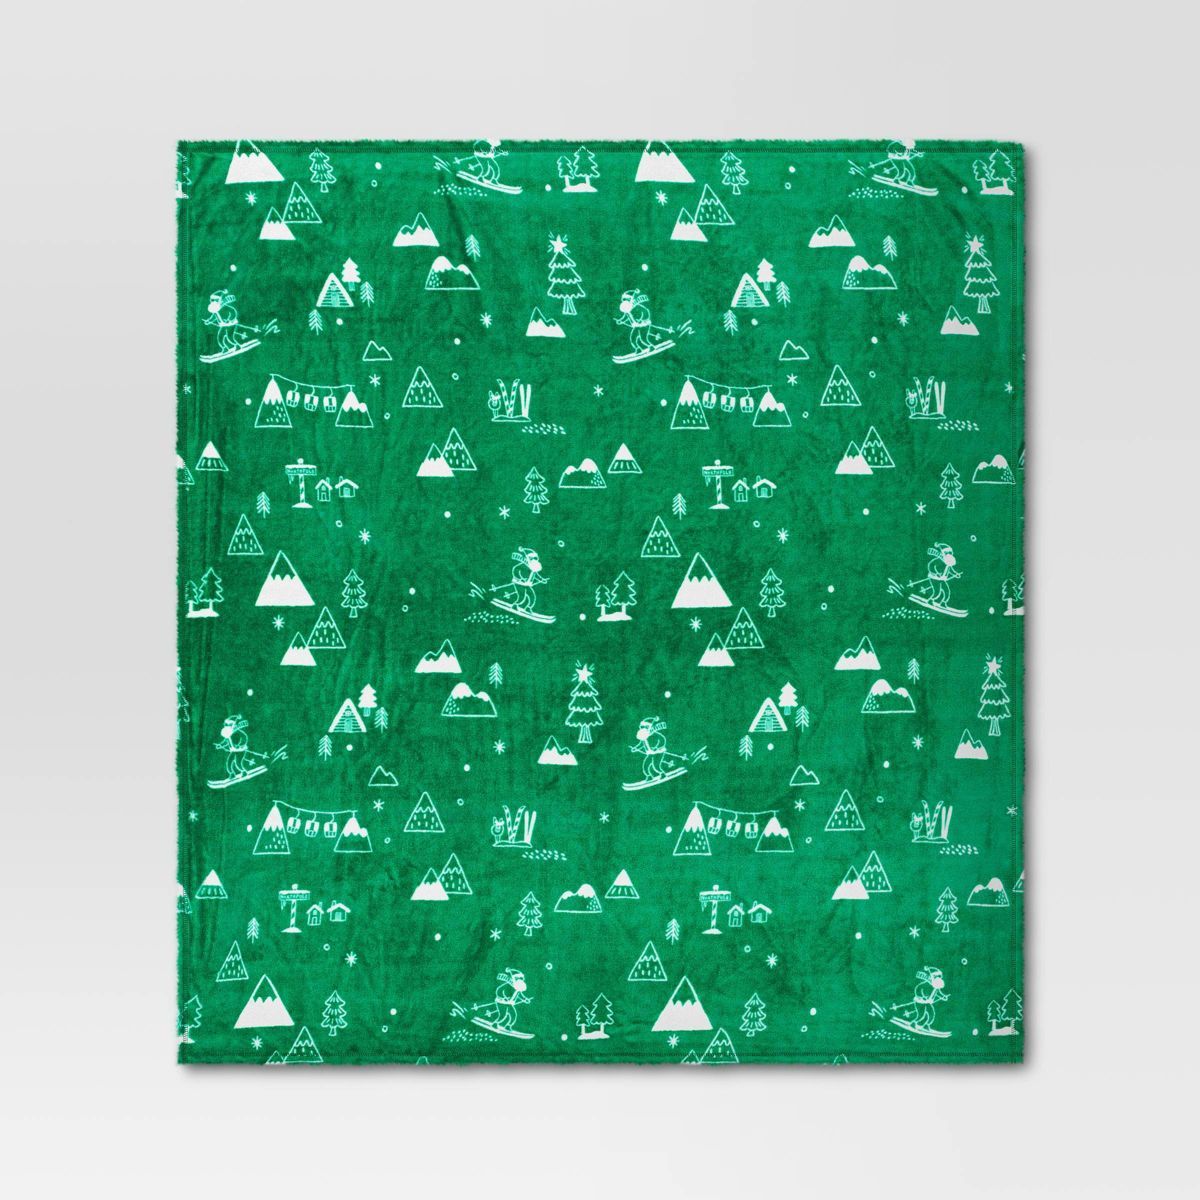 Winter Ski Scene Plush Knit Throw Blanket Green/White - Wondershop™ | Target